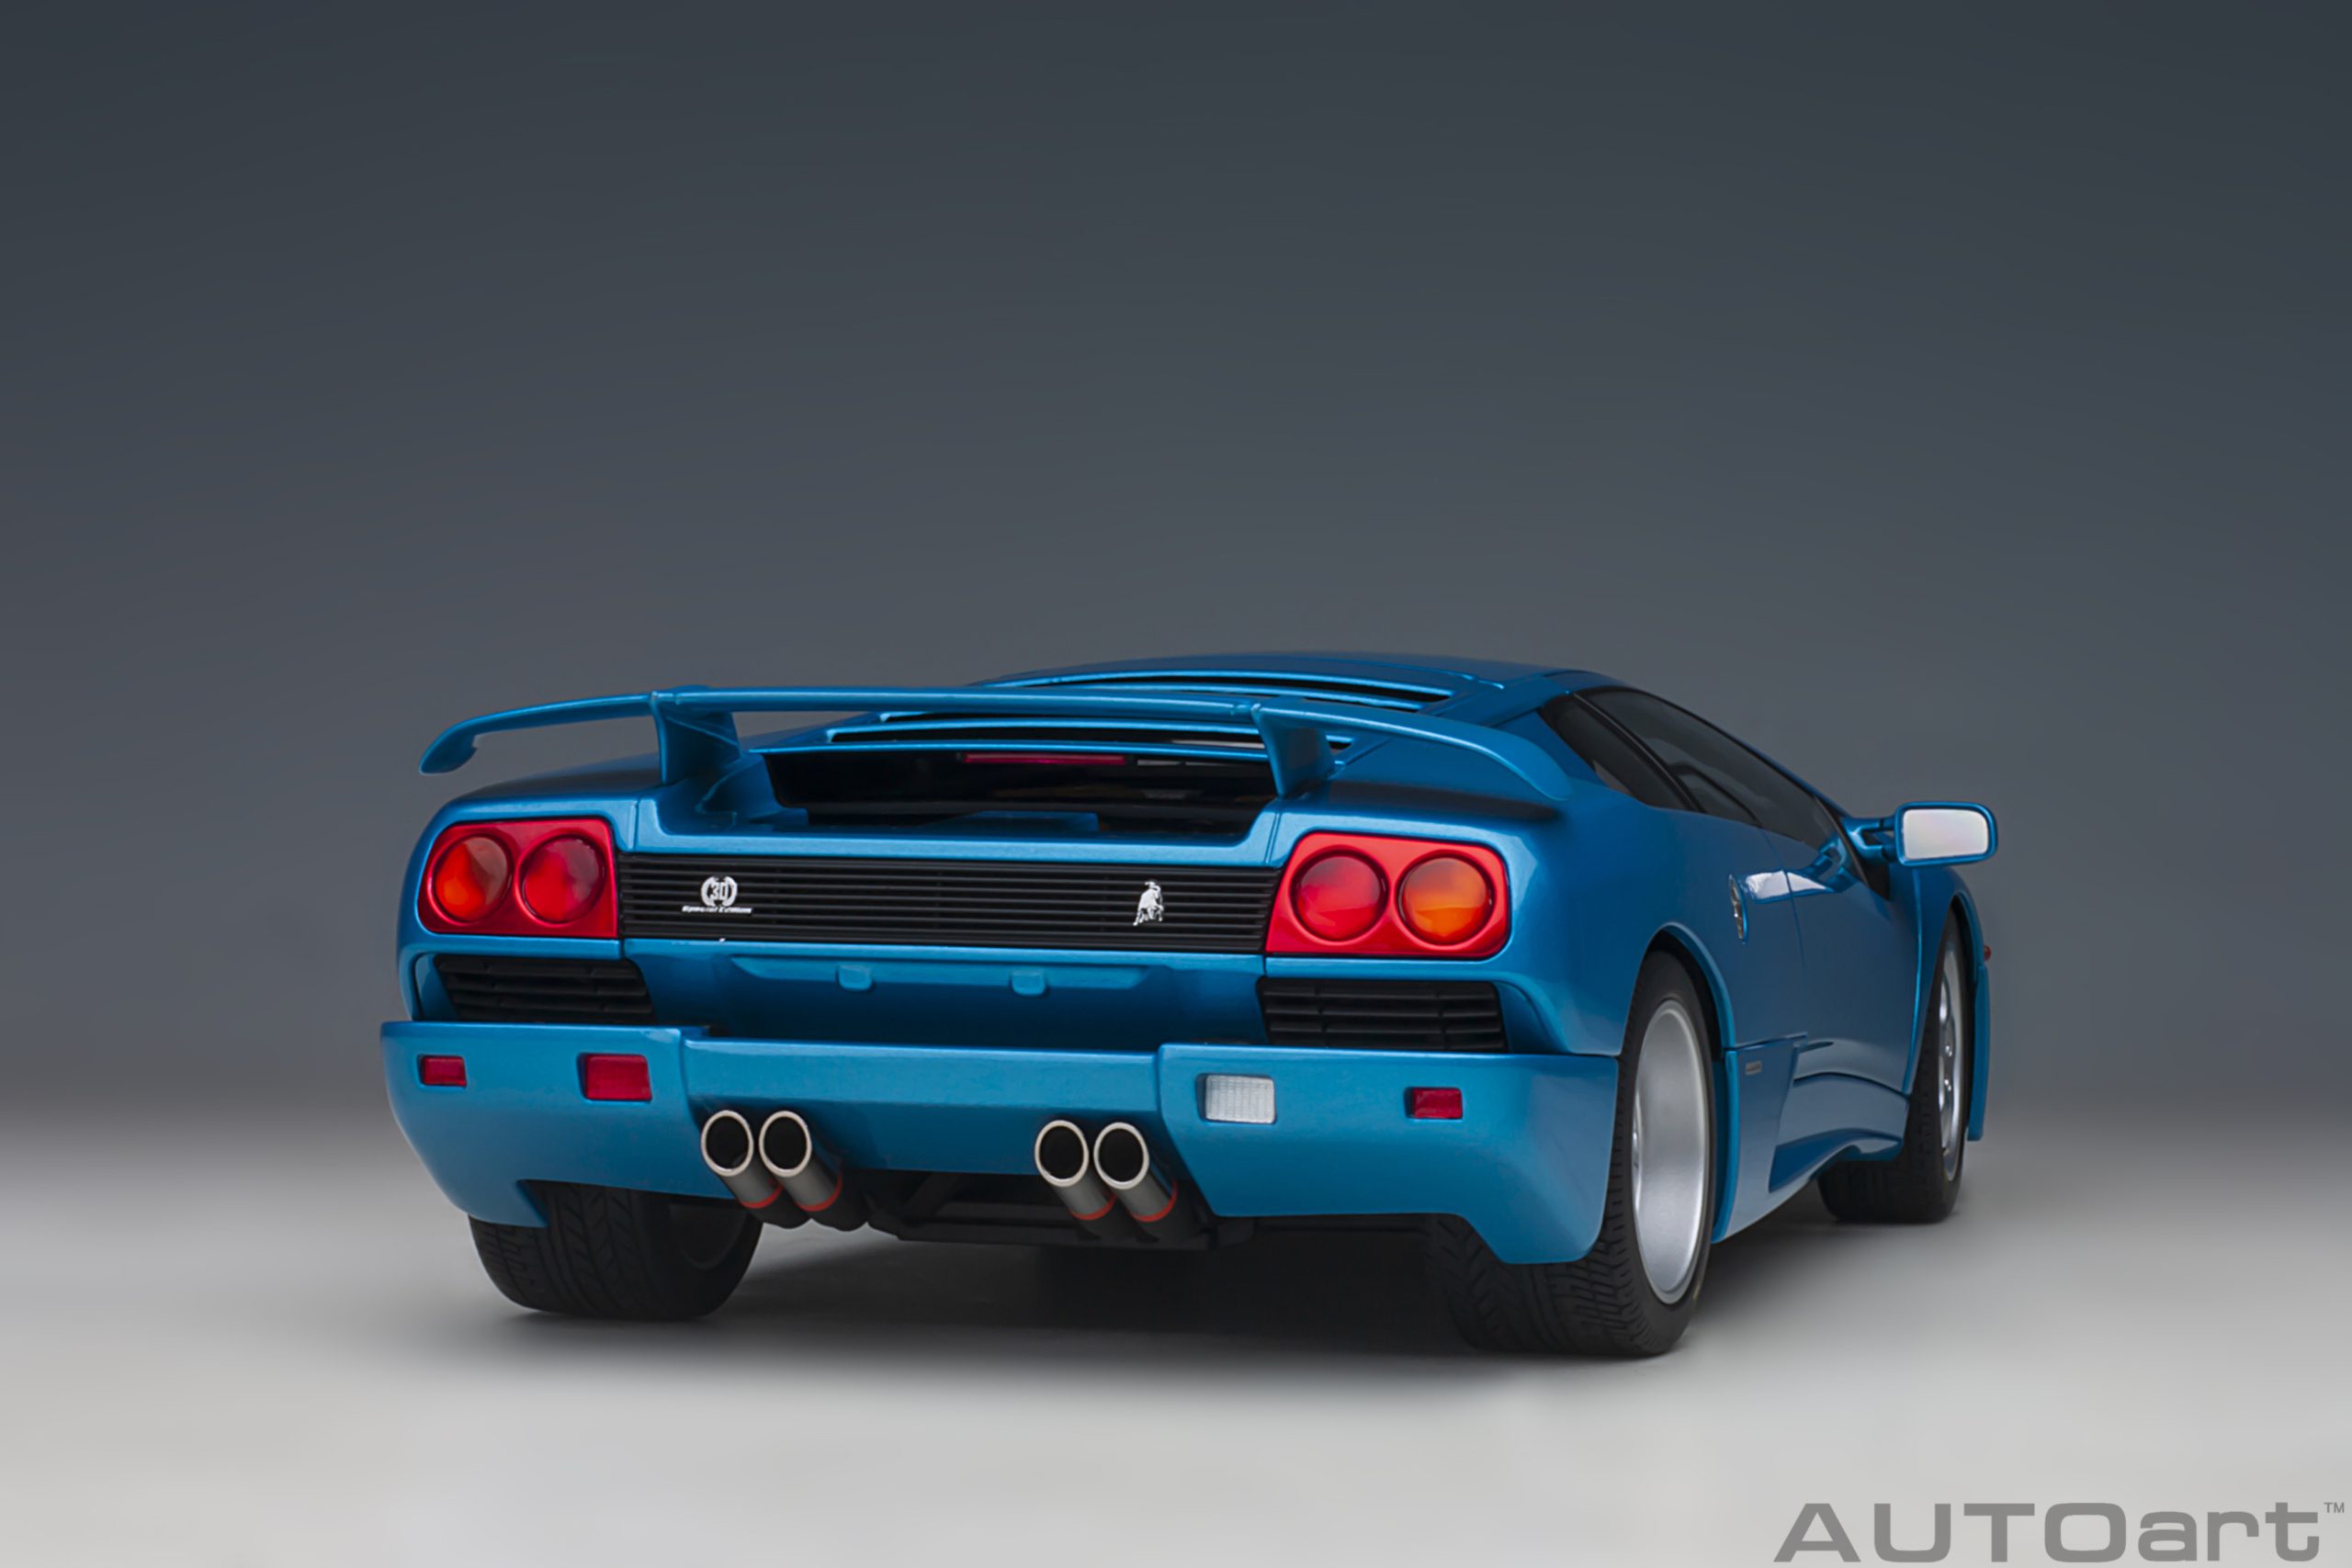 autoart-79156-8-Lamborghini-Diablo-SE30-30th-Anniversary-Edition-Blu-Sirena-metallic-blue